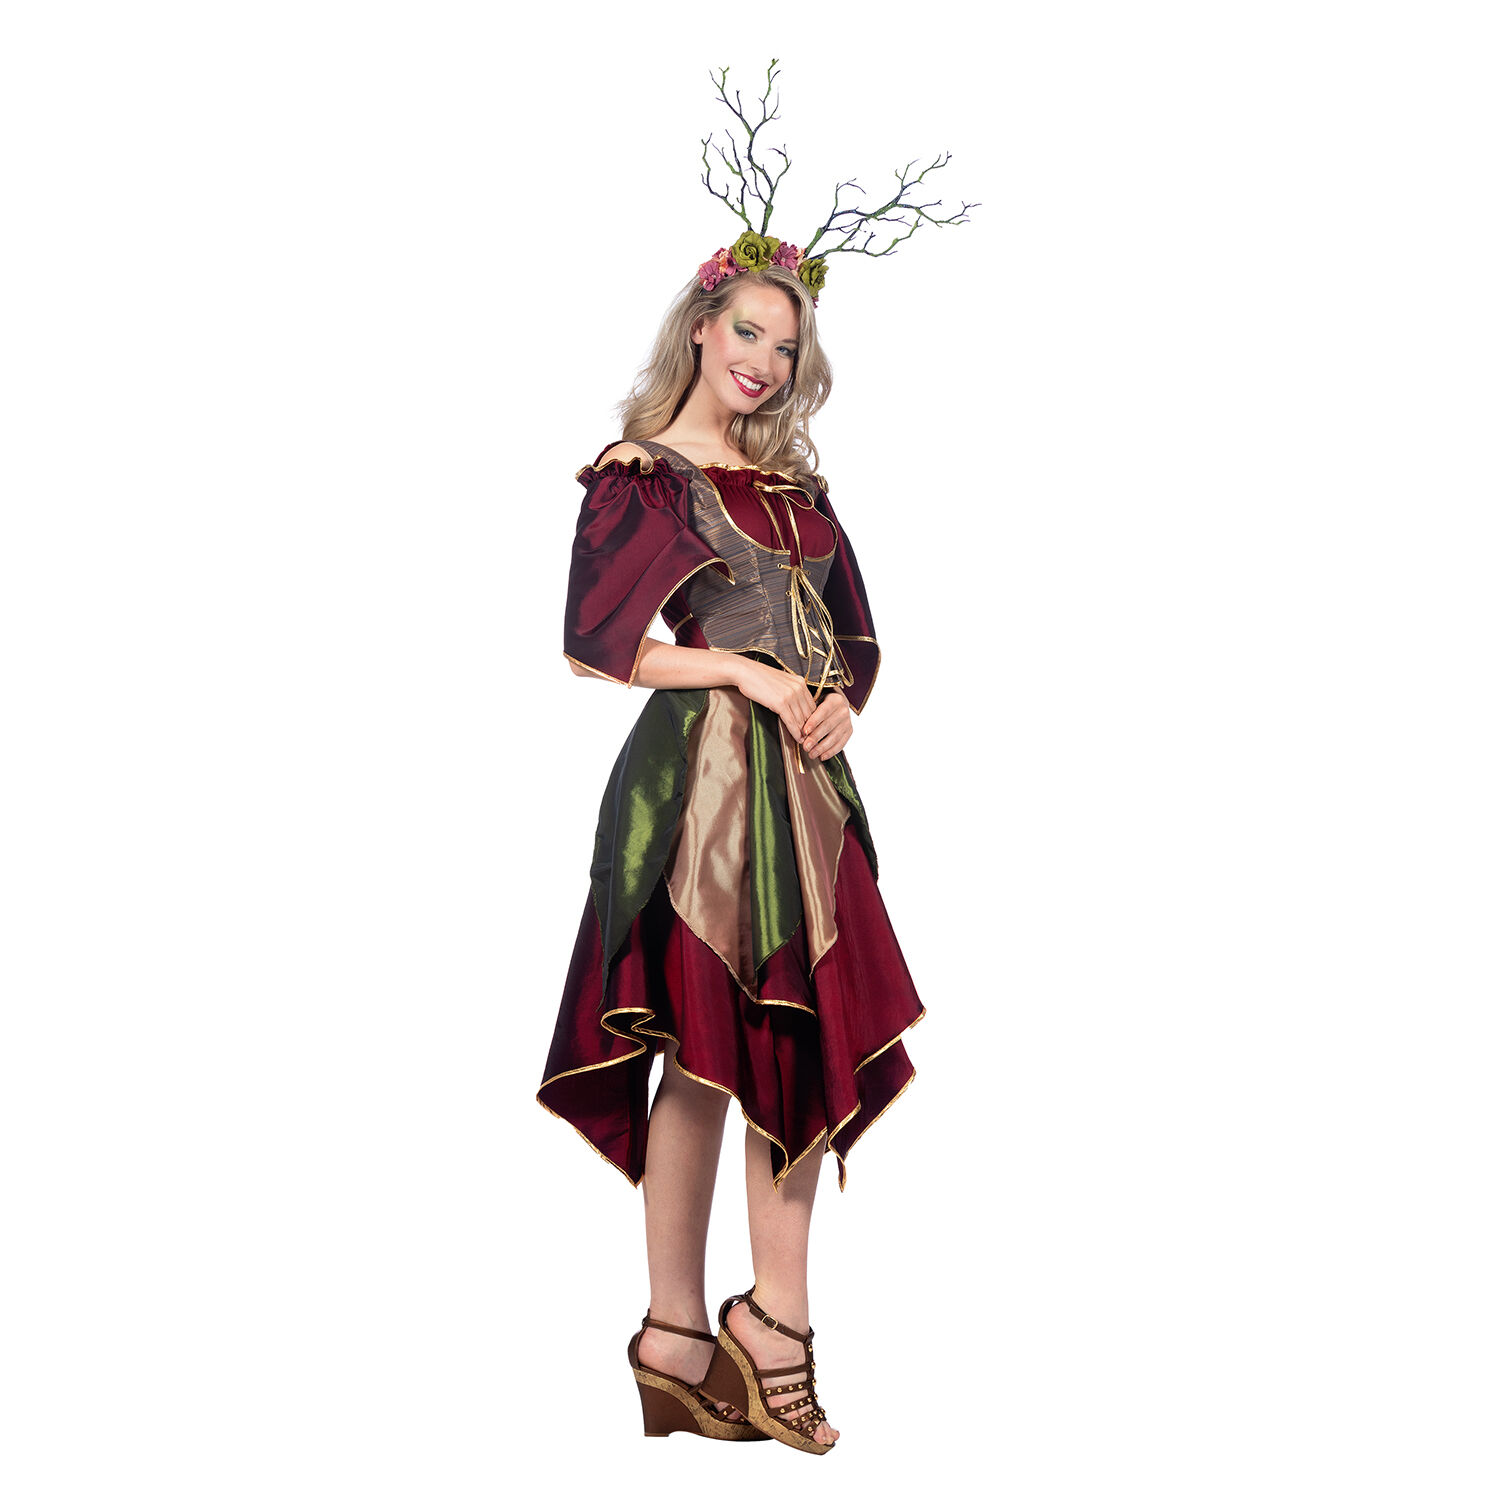 NEU Damen-Kostm Waldfee, Kleid mit Korsage, mehrfarbig, Gr. 36 Bild 3